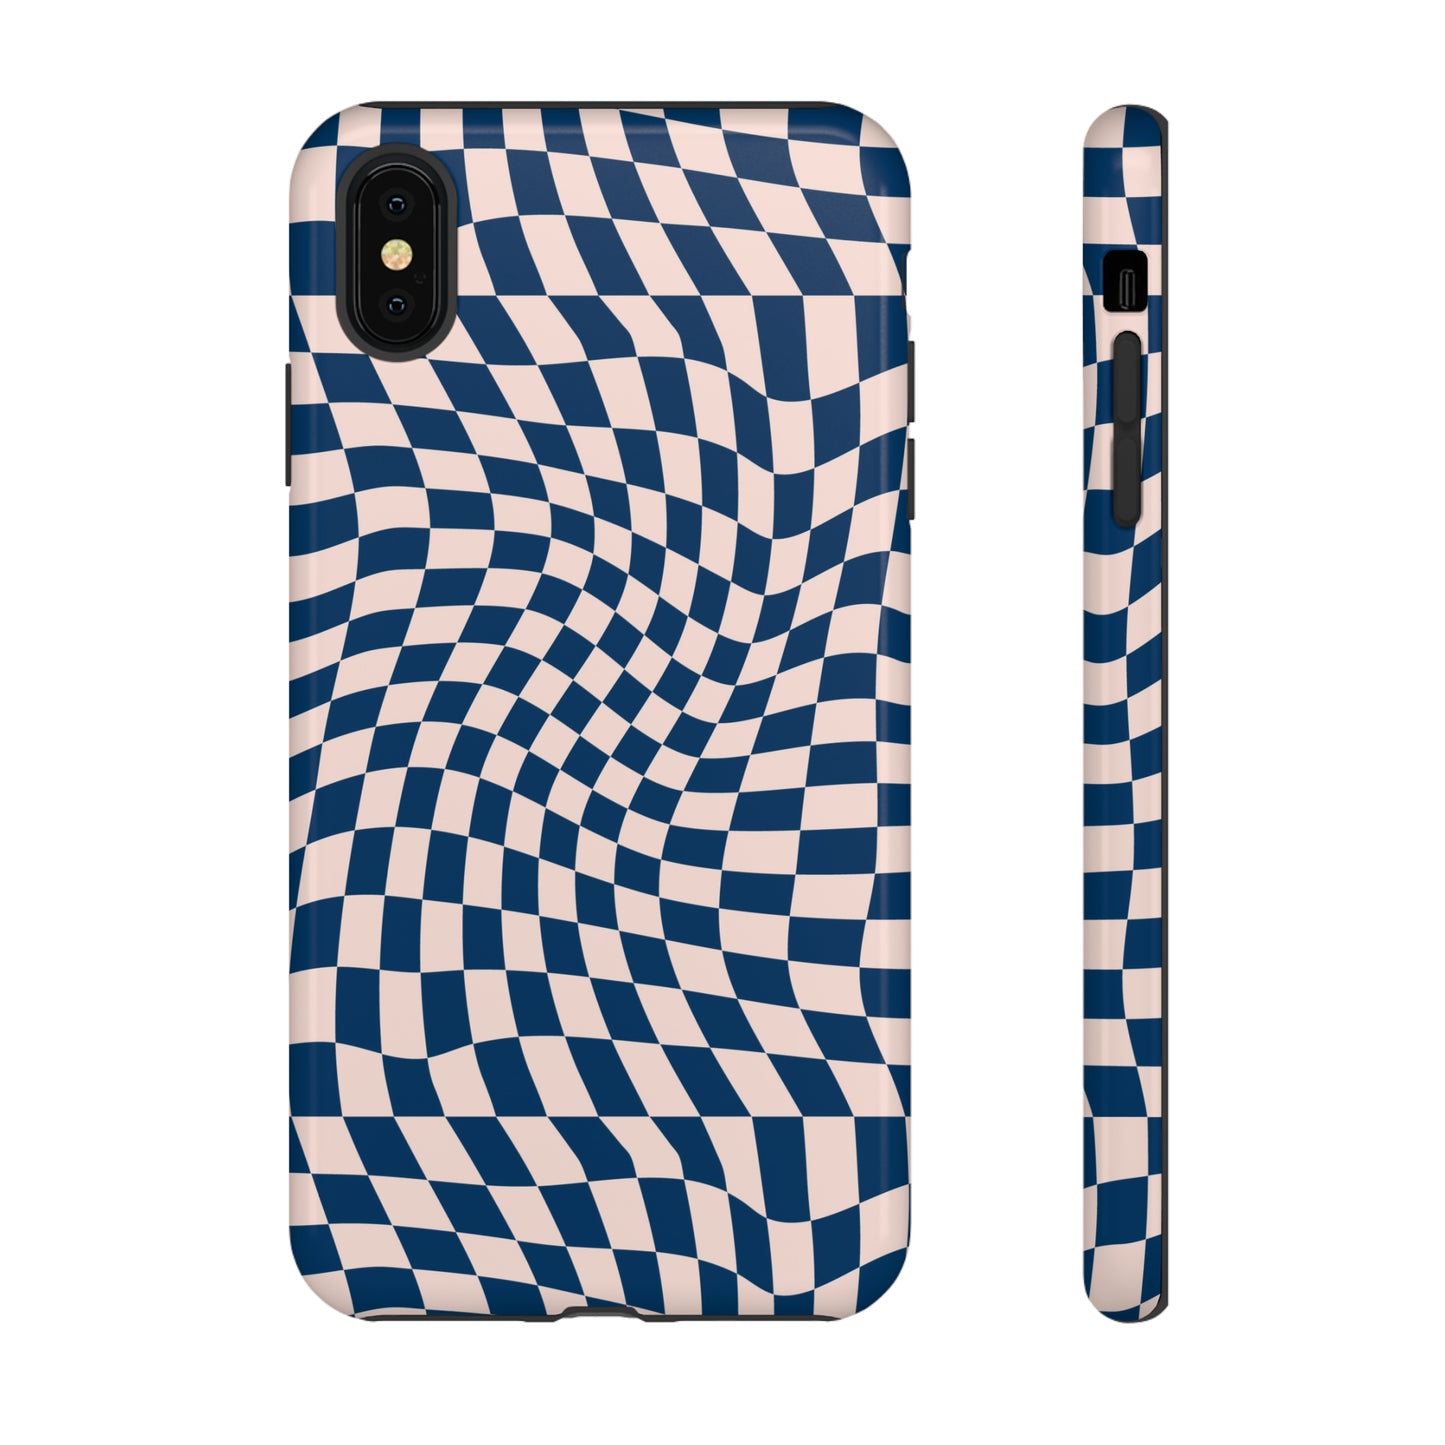 Wavy Blue Checkerboard